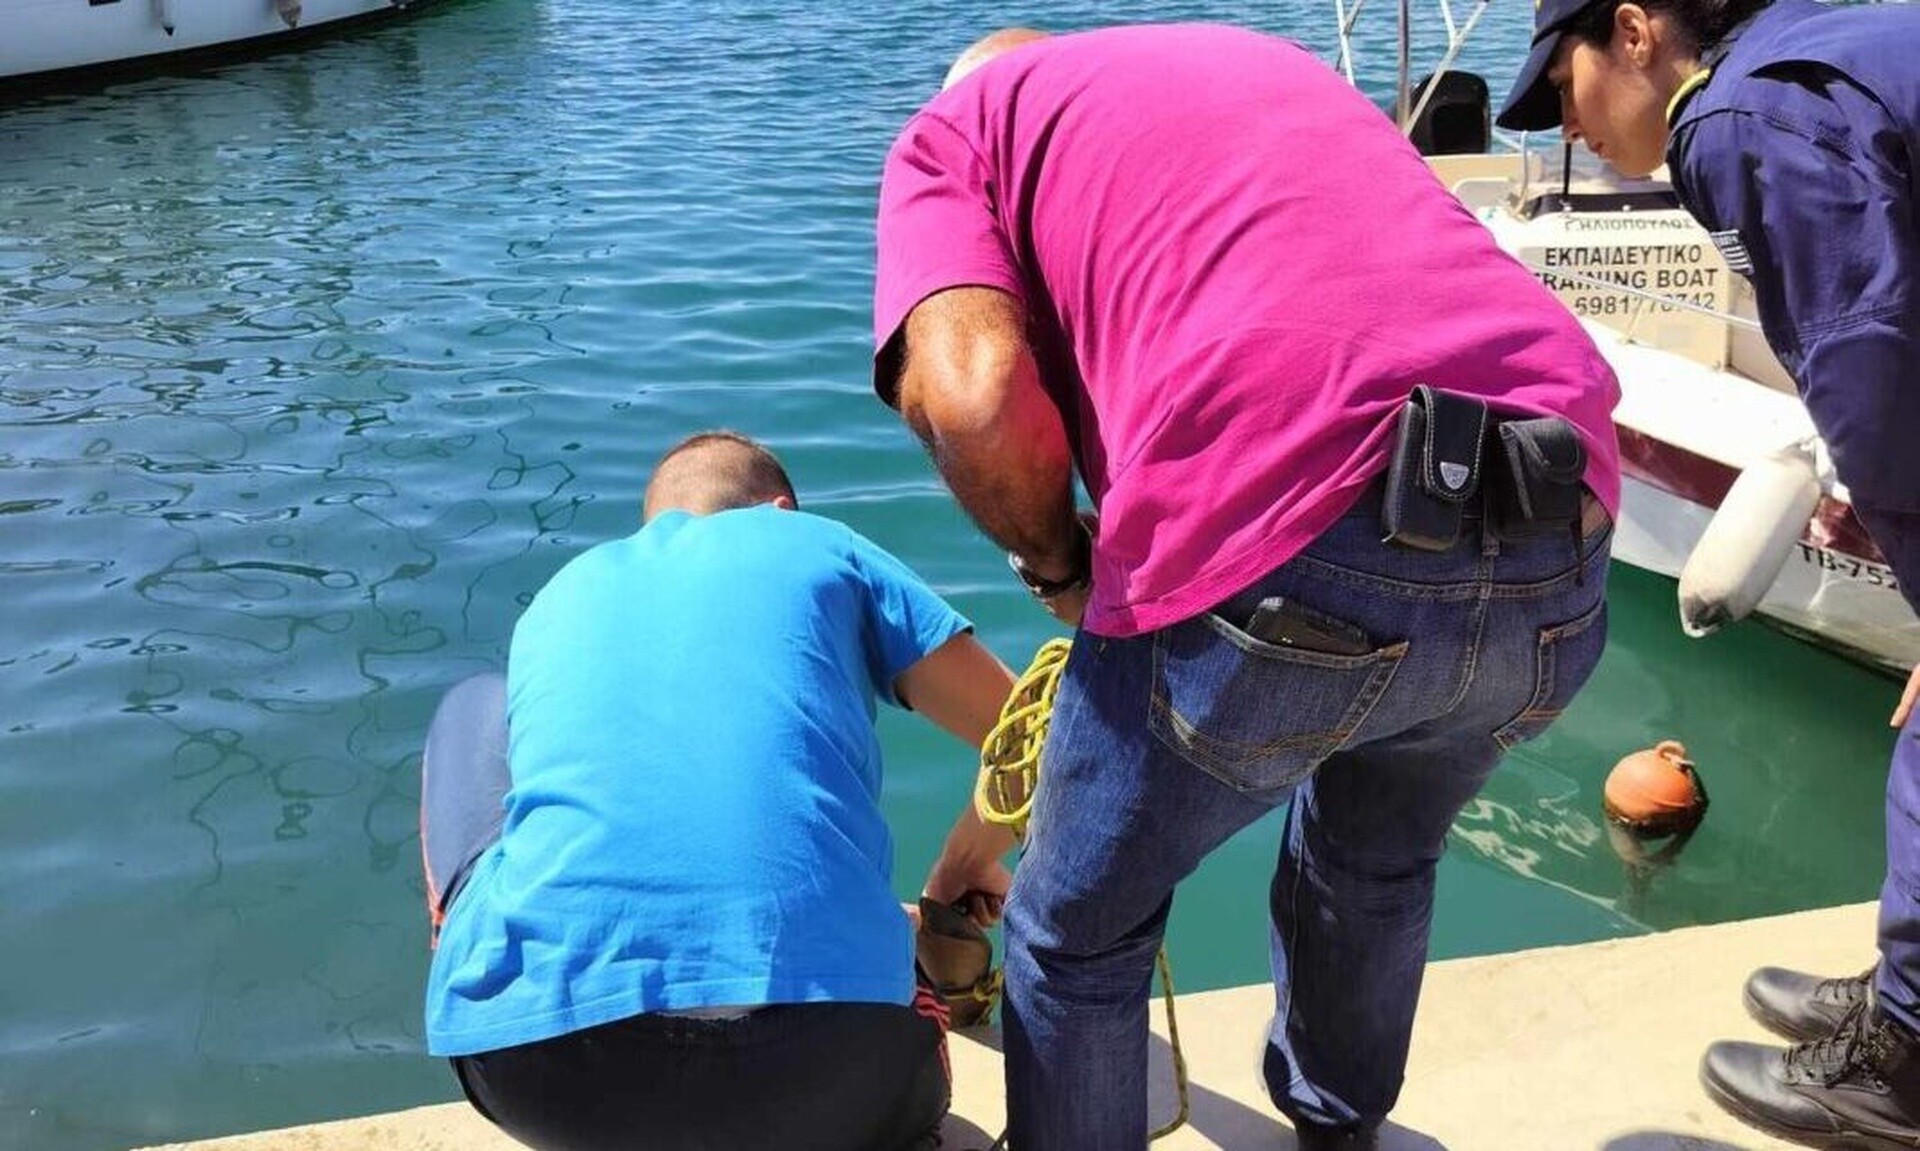 Βόλος: Καρχαριοειδες μήκους 3,5 μέτρων εντοπίστηκε στο λιμάνι (vid)